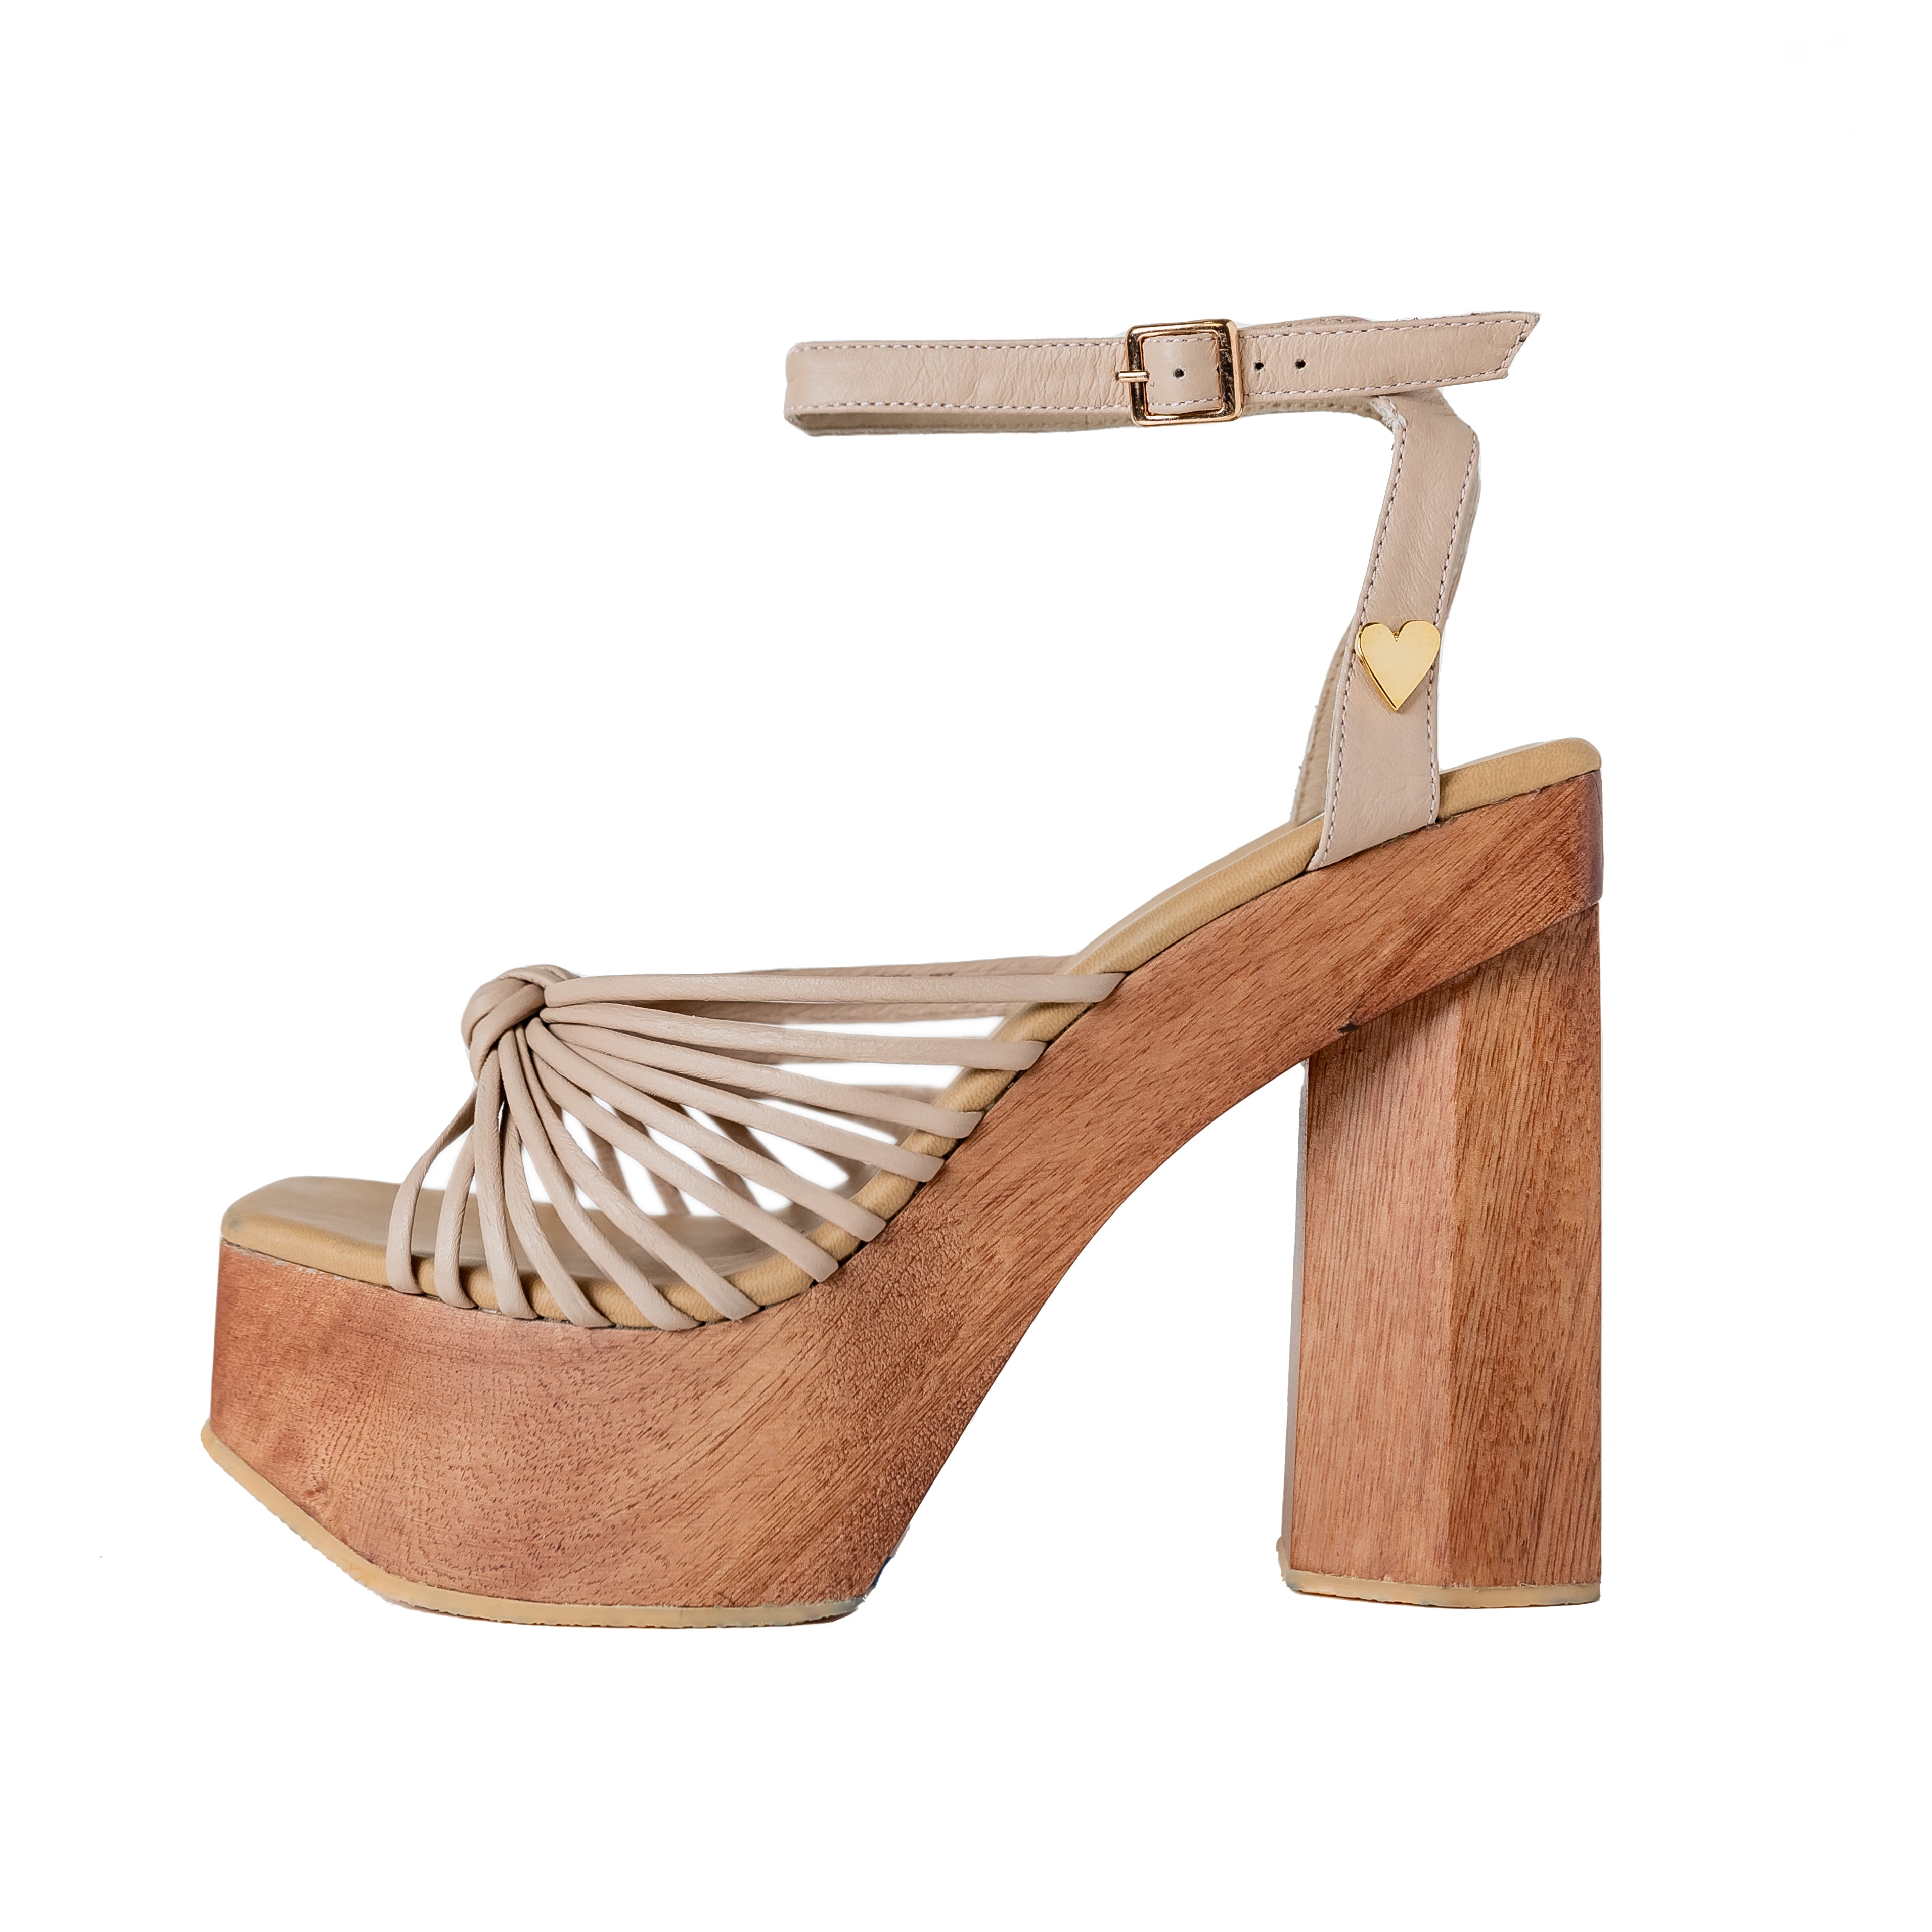 Stella - High Heels | Wooden platform